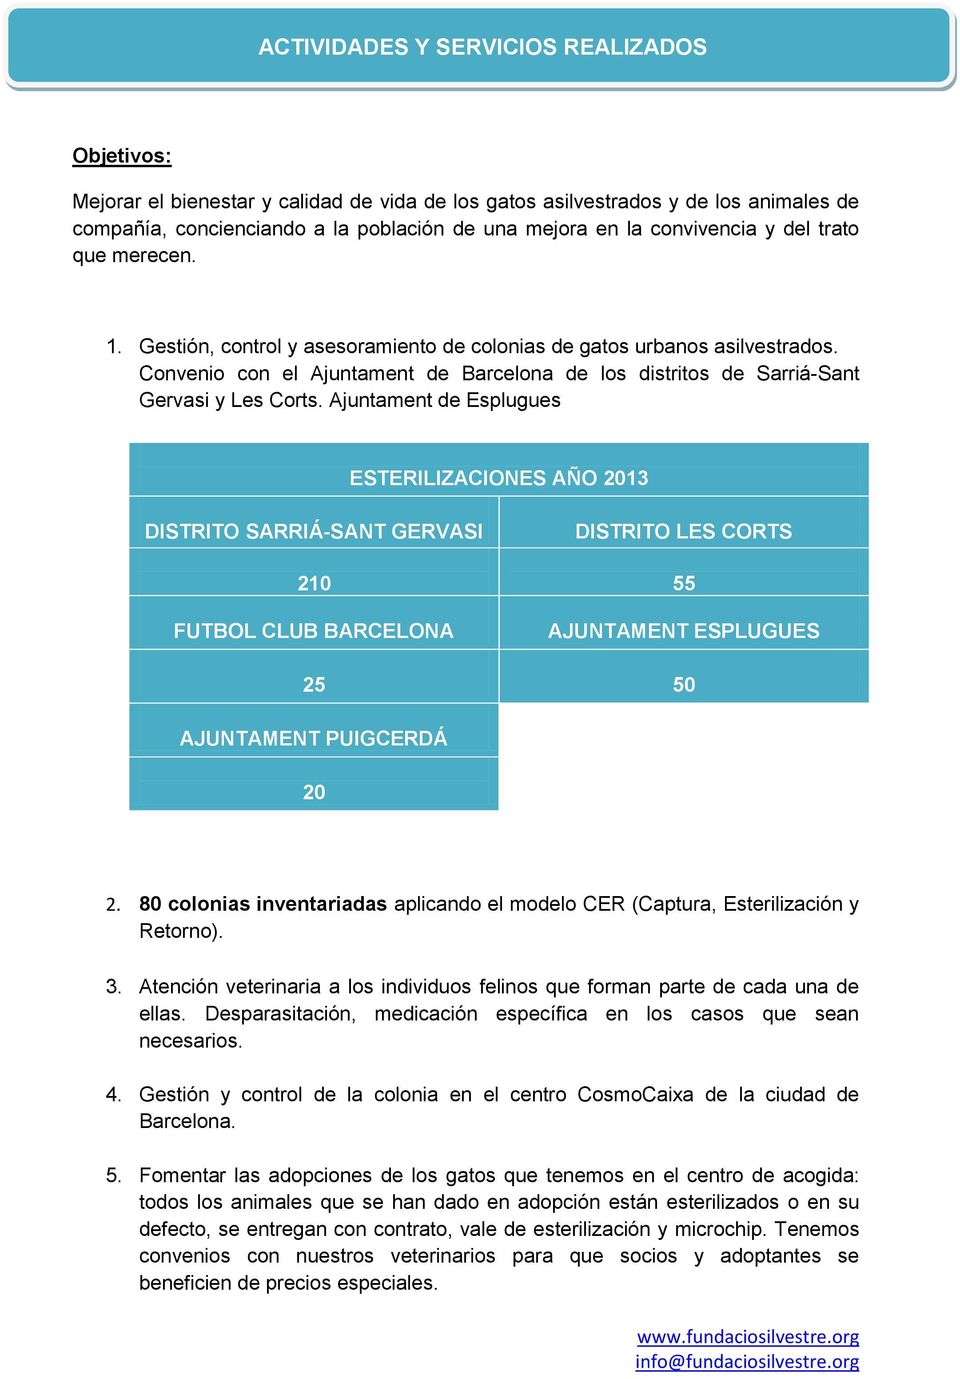 Convenio con el Ajuntament de Barcelona de los distritos de Sarriá-Sant Gervasi y Les Corts.